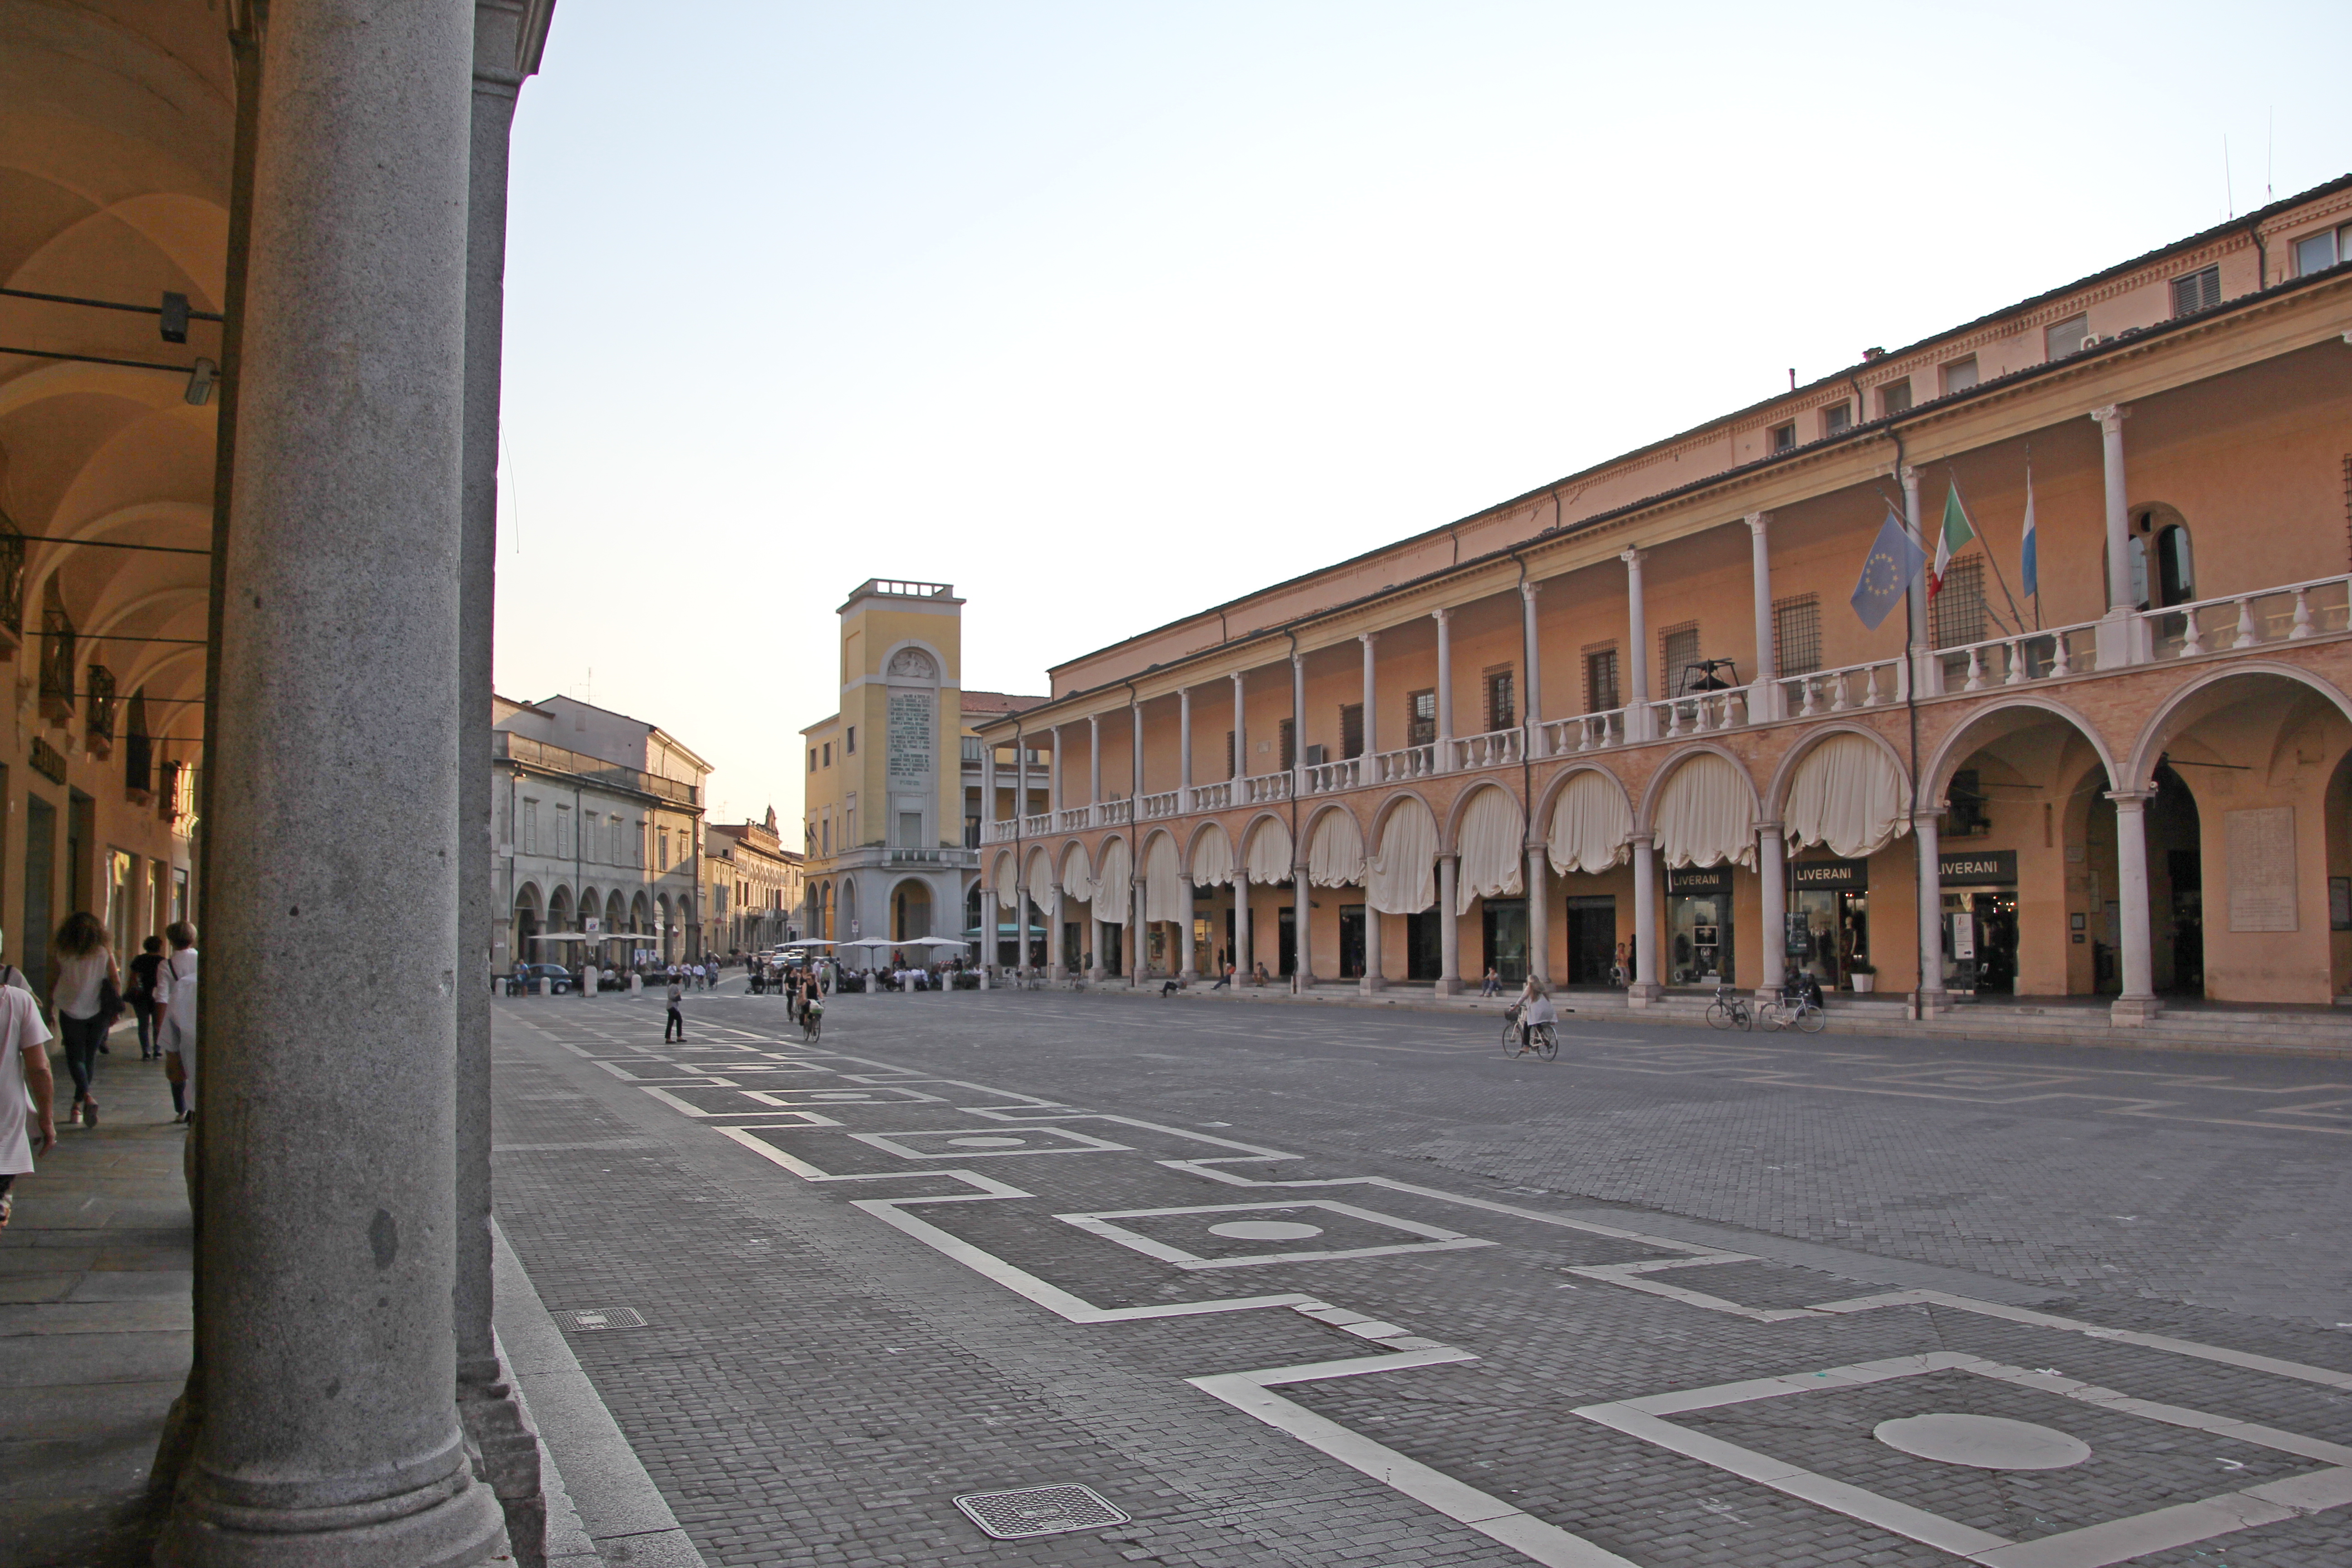 foto: https://upload.wikimedia.org/wikipedia/commons/6/61/Faenza%2C_piazza_del_Popolo_%2801%29.jpg